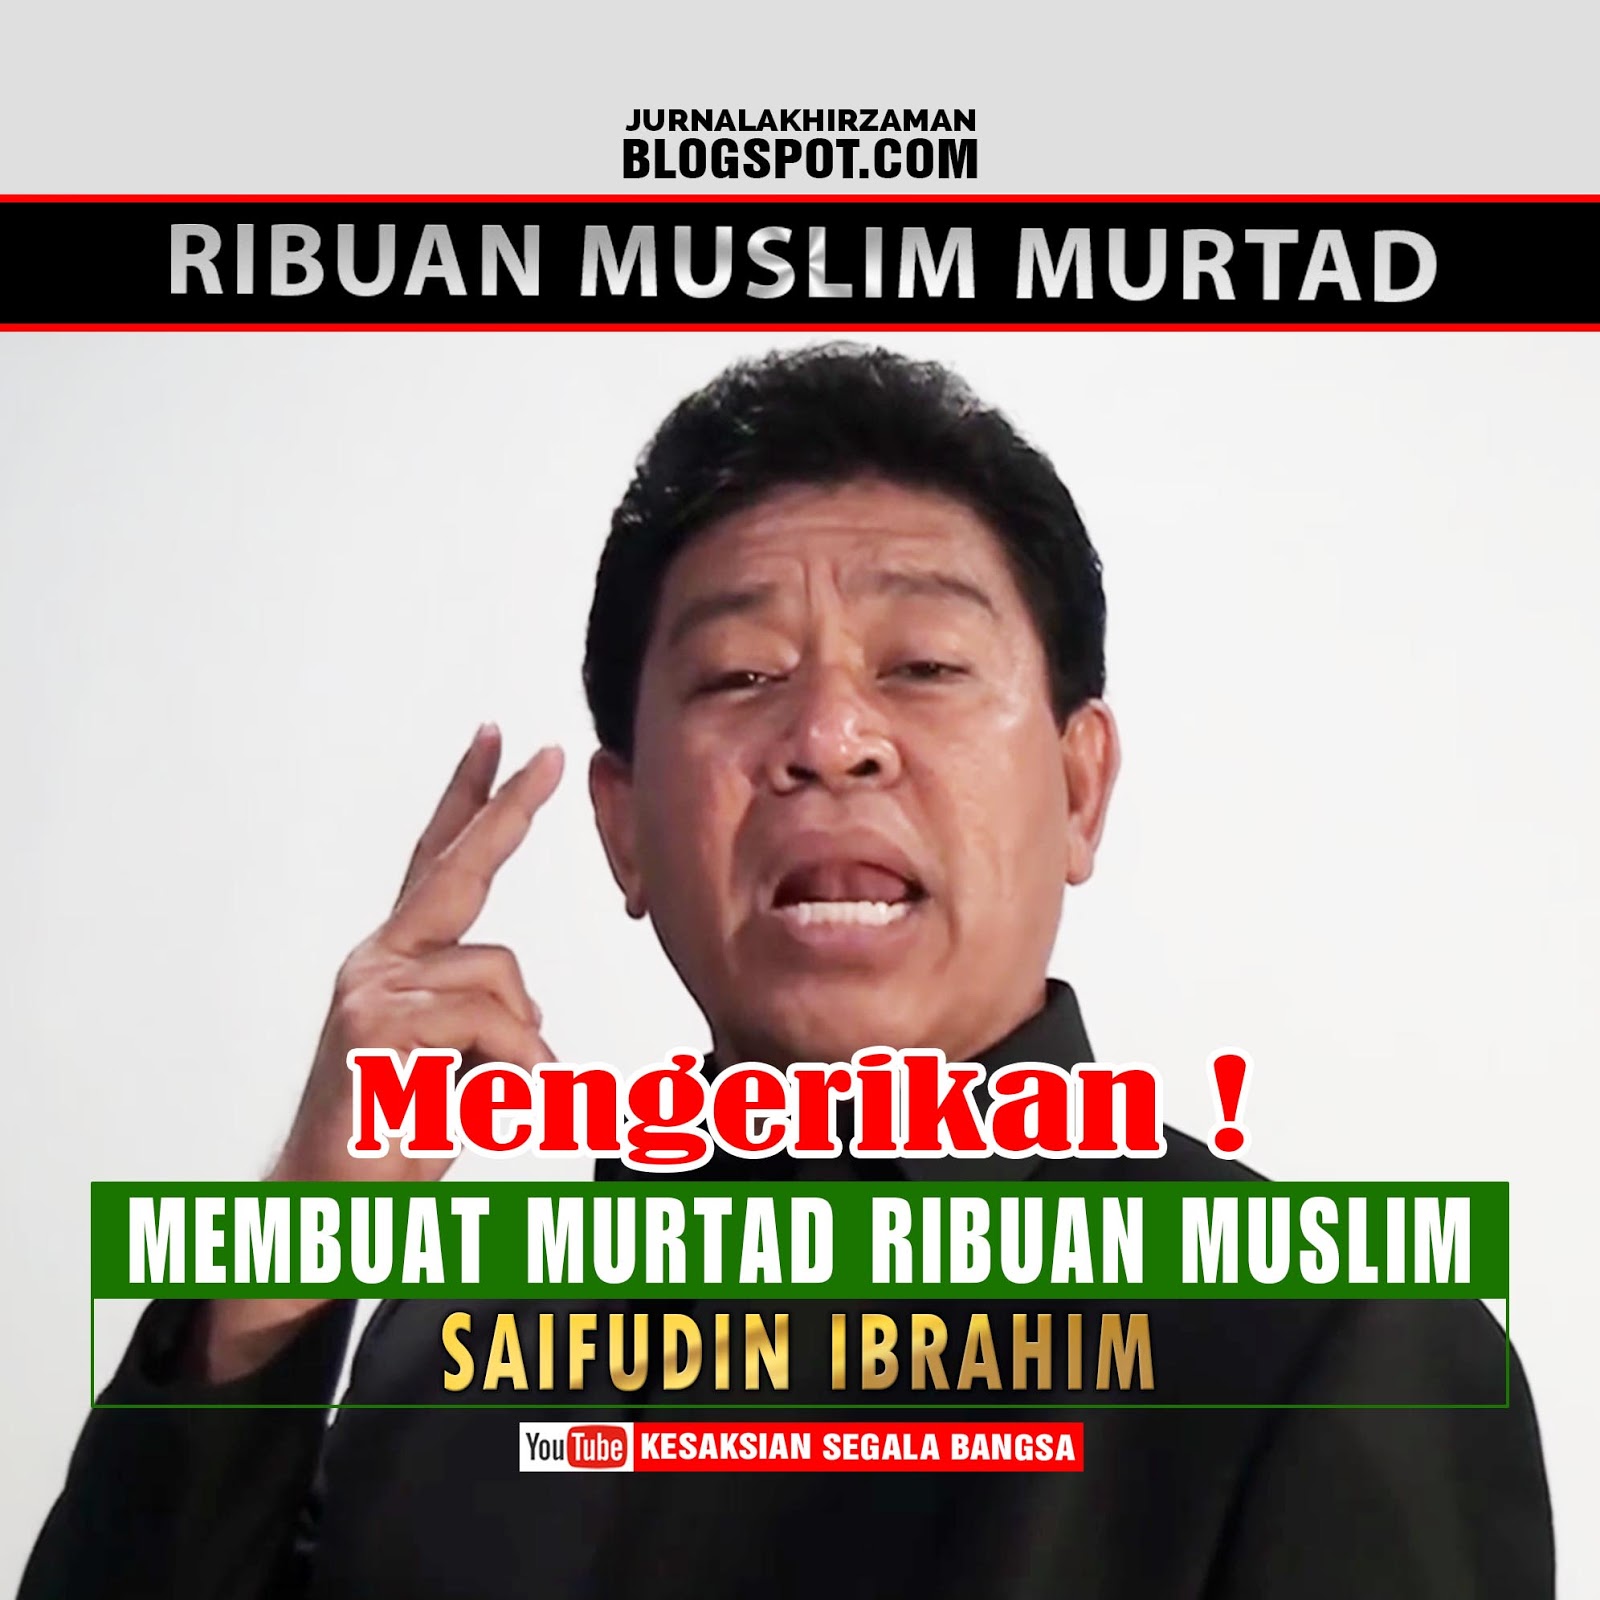 Heboh Saifuddin Ibrahim Ex Muslim Murtadkan Ribuan Umat Islam